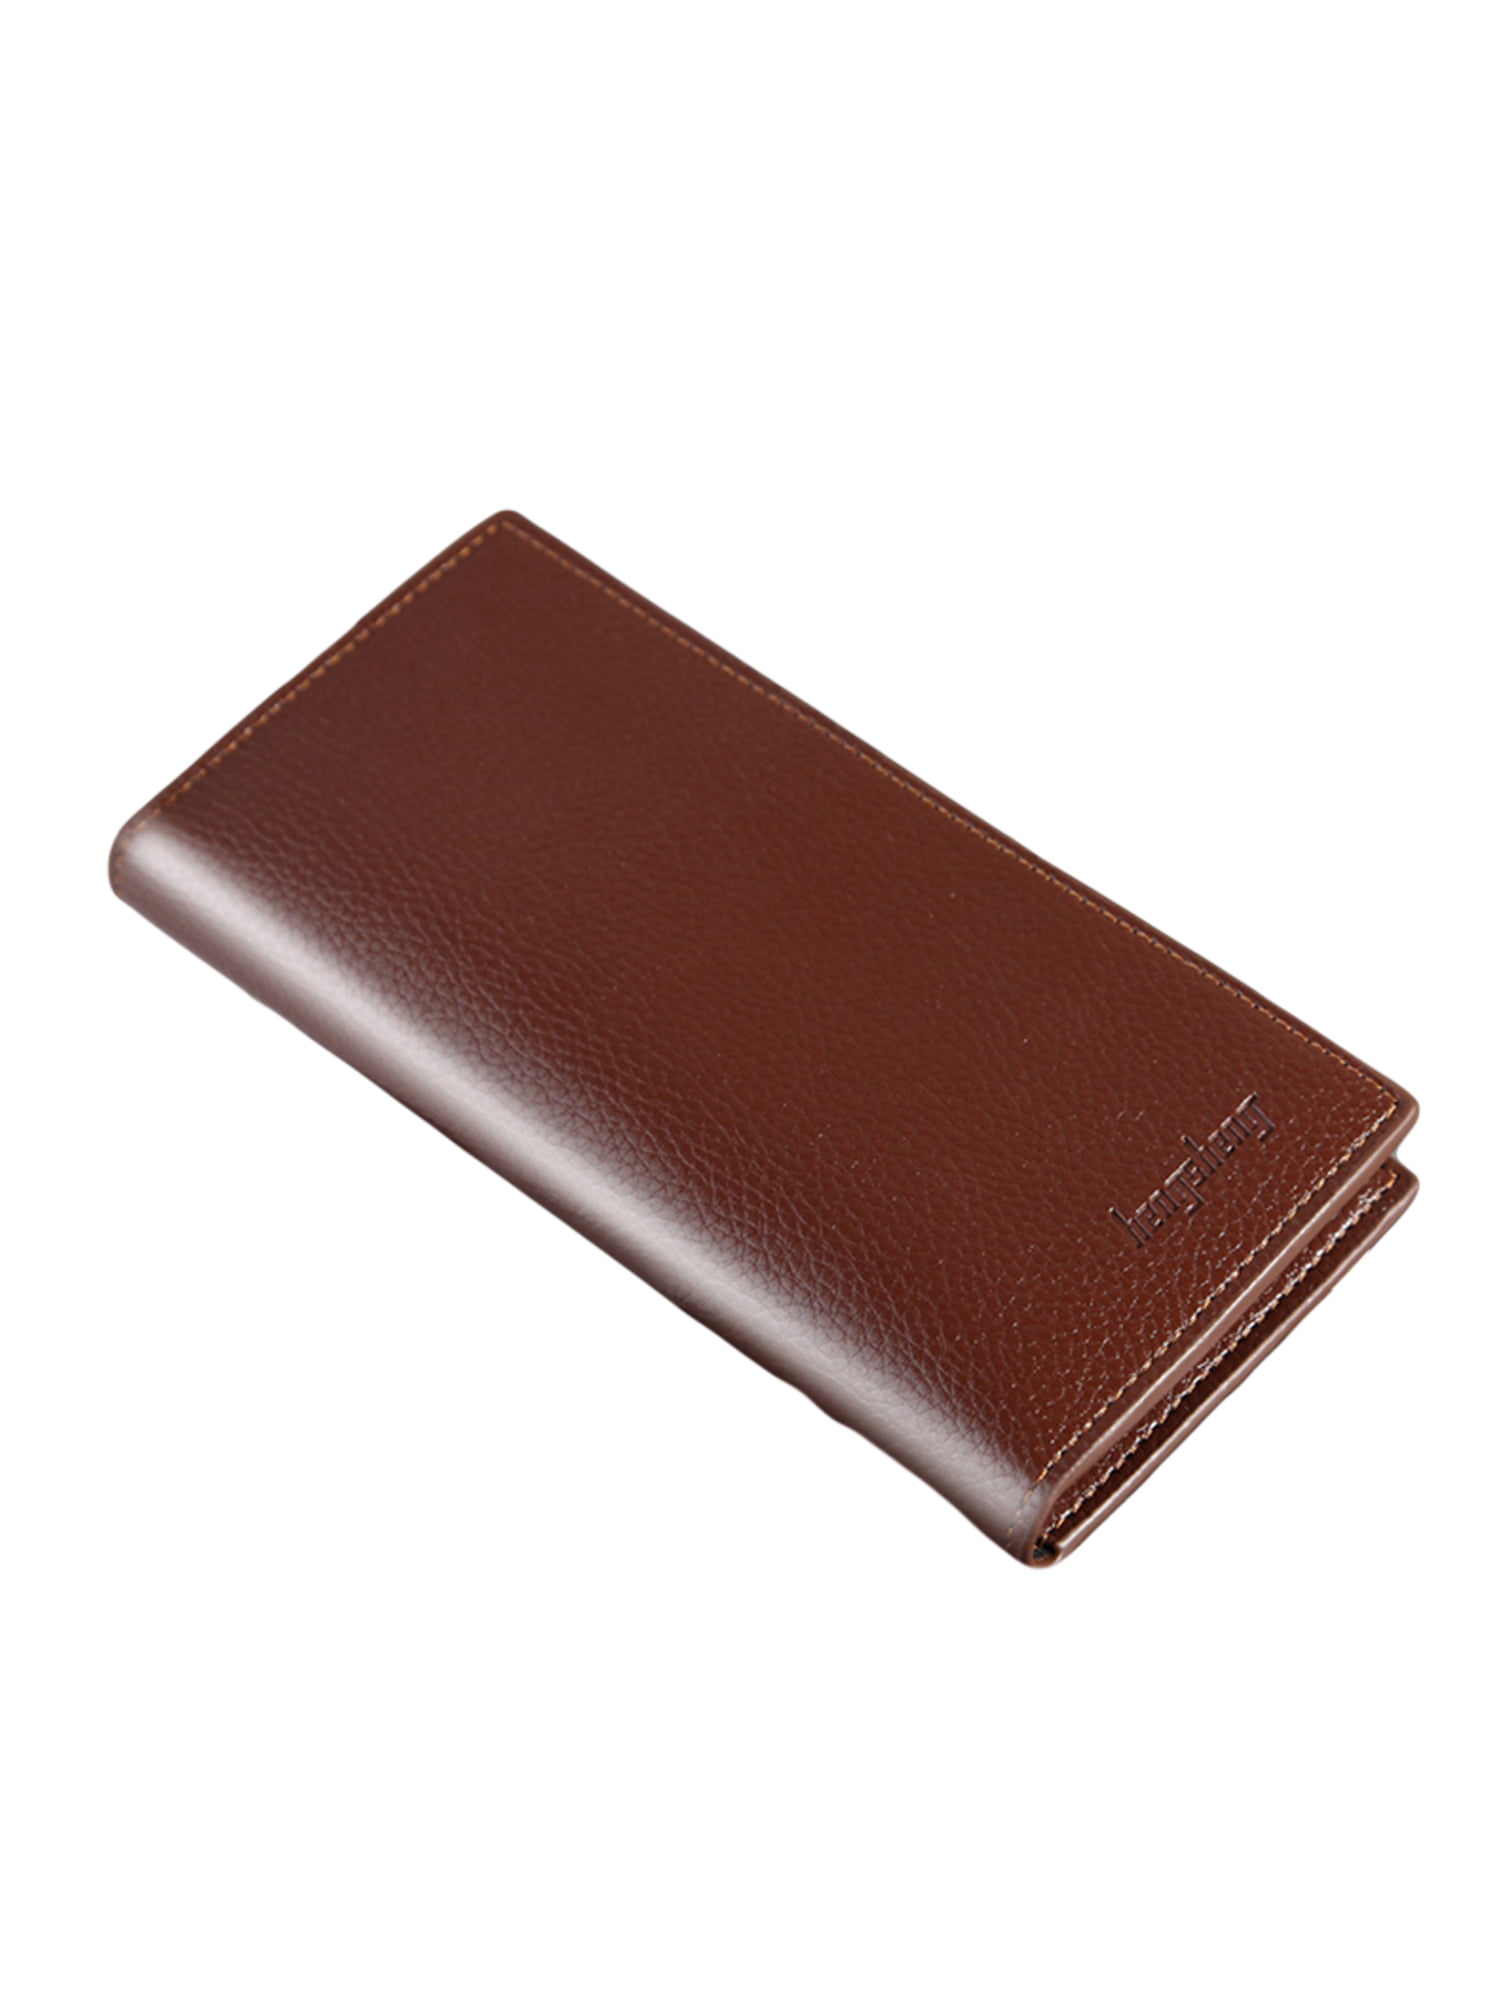 Men Wallet Luxury Leather Brand Wallets Male Wallet Bifold Card Holder Purse NEW 